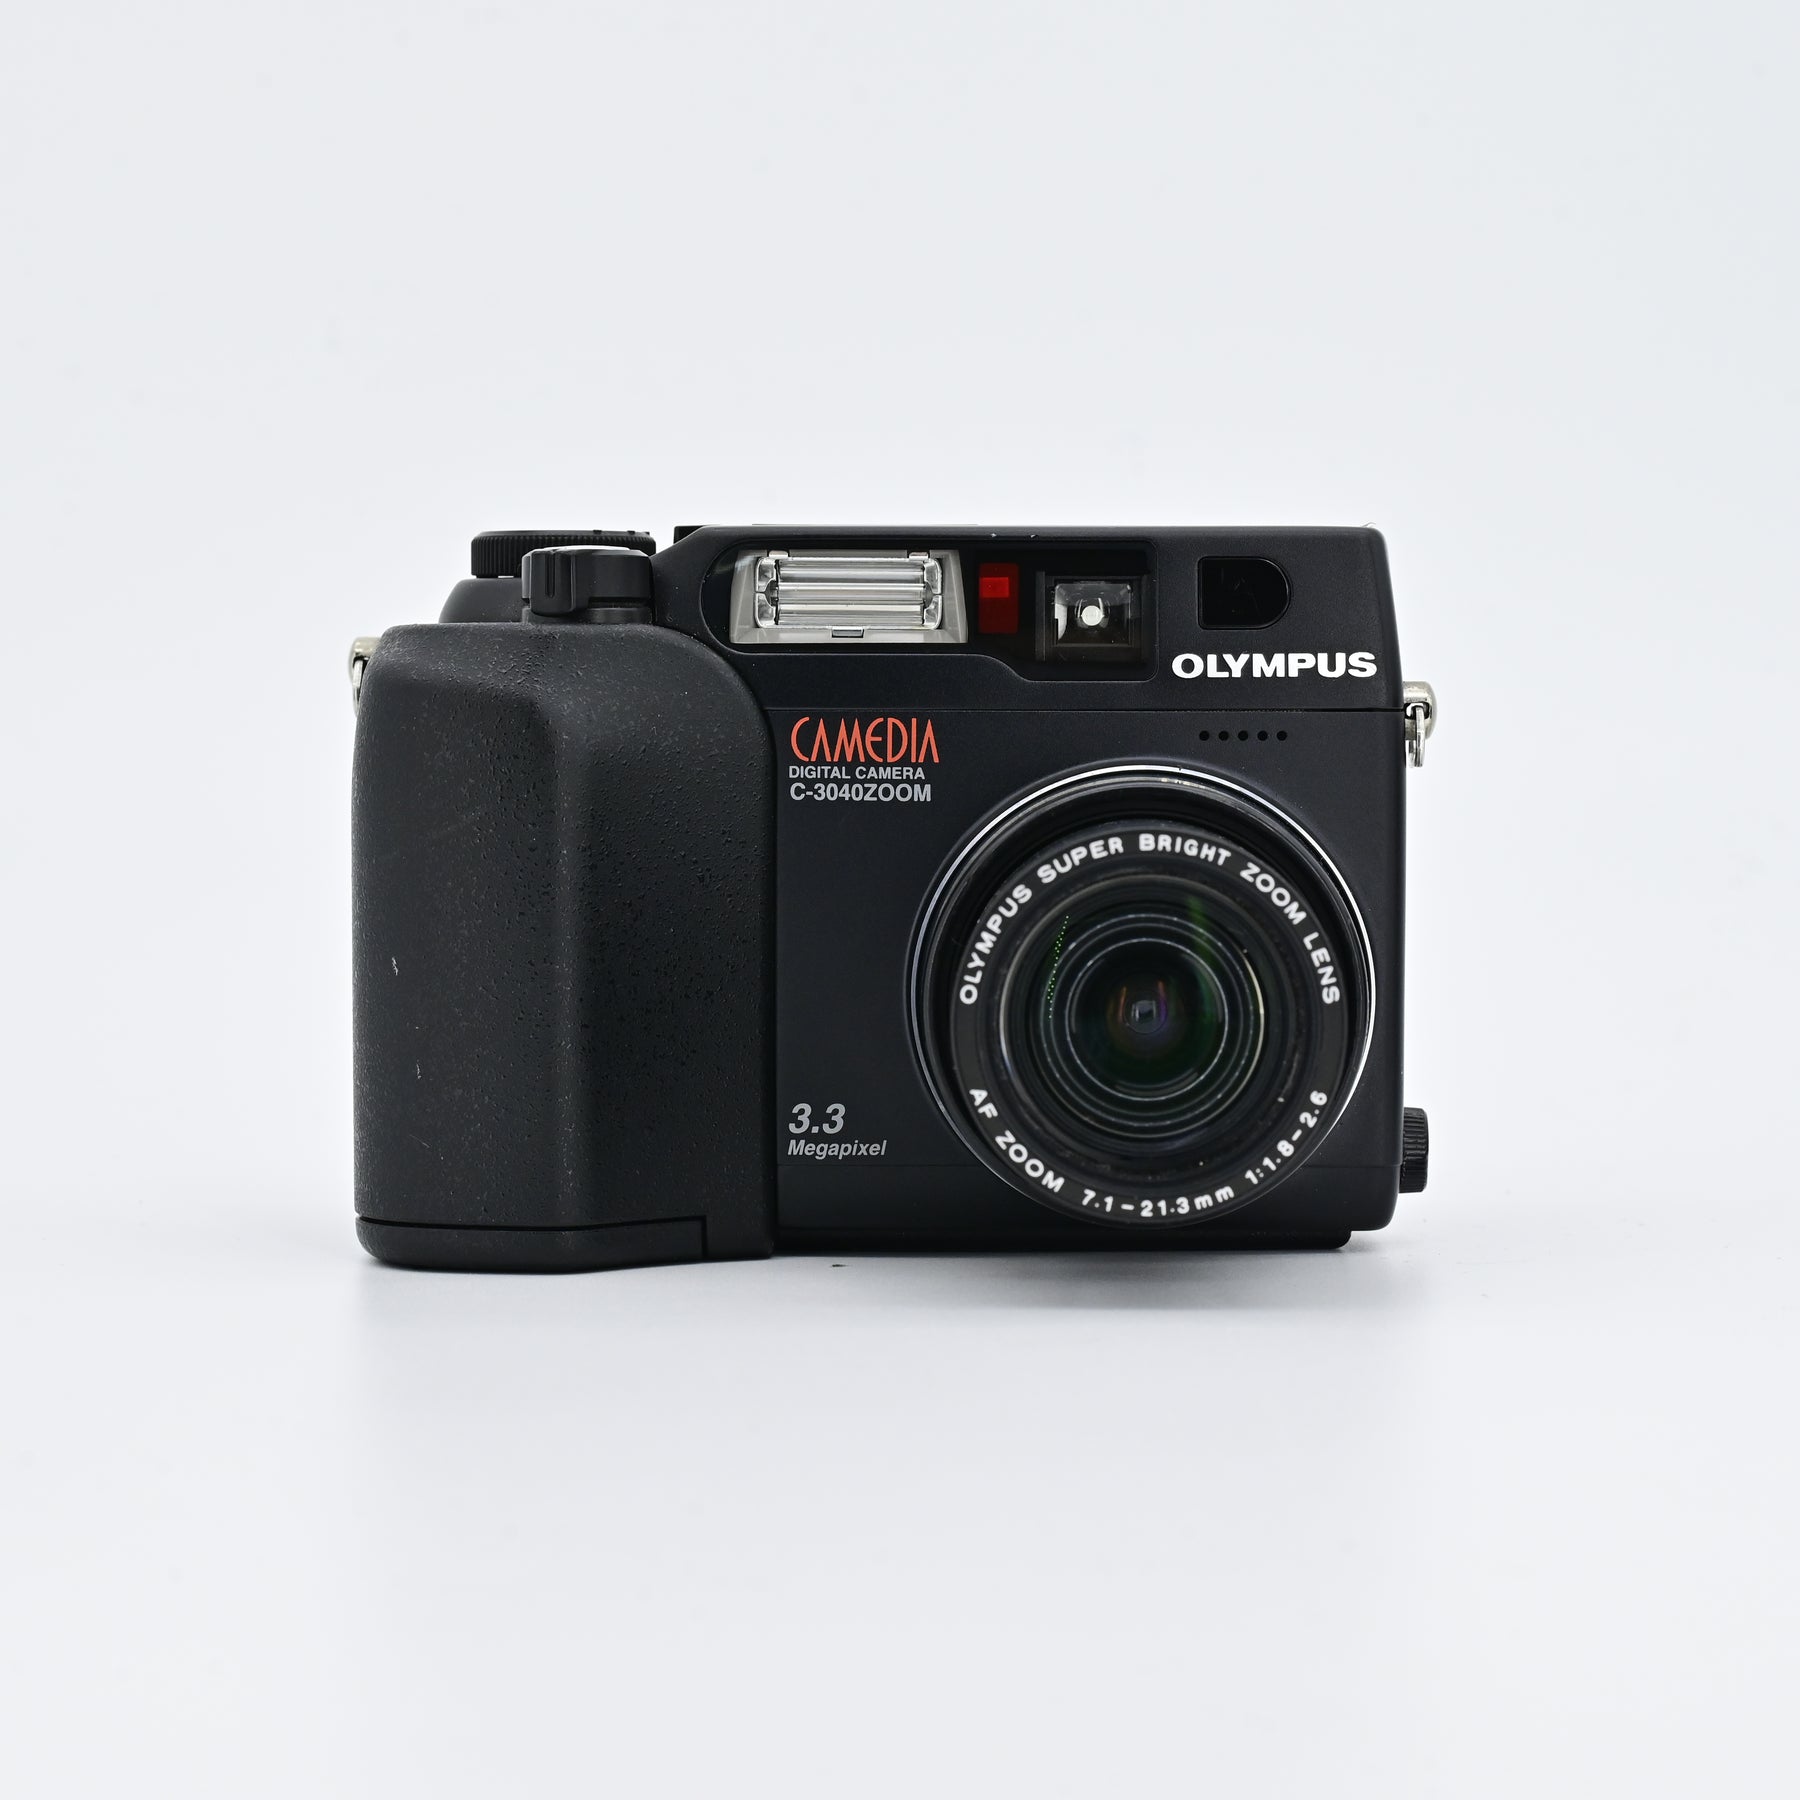 美品 CAMEDIA C-3030 ZOOM デジカメ デジタルカメラ - コンパクト